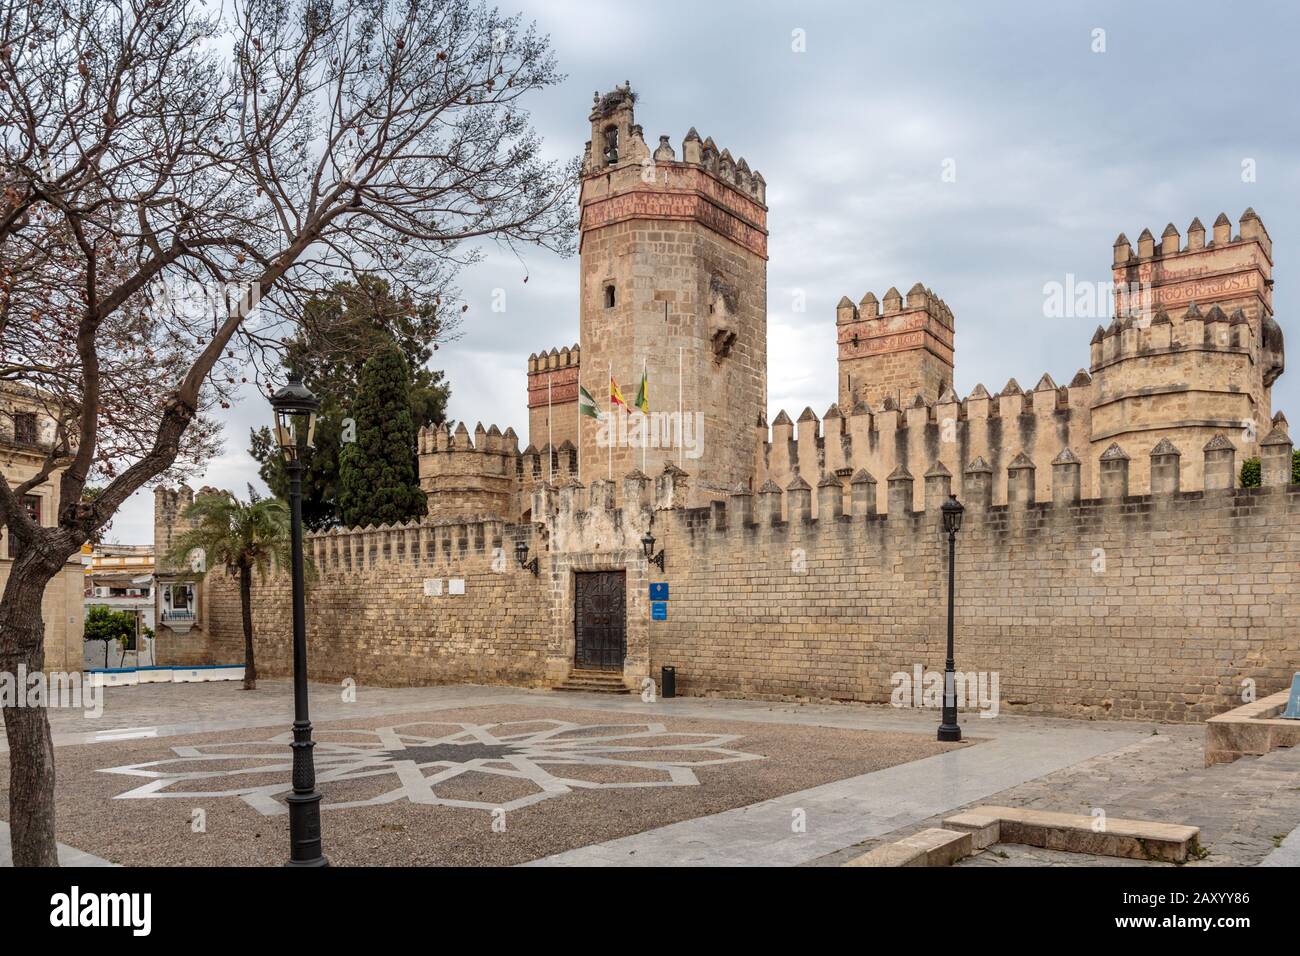 Le Château de San Marcos est une structure médiévale islamique-gothique située à El Puerto de Santa María, province de Cadix, Espagne. Banque D'Images